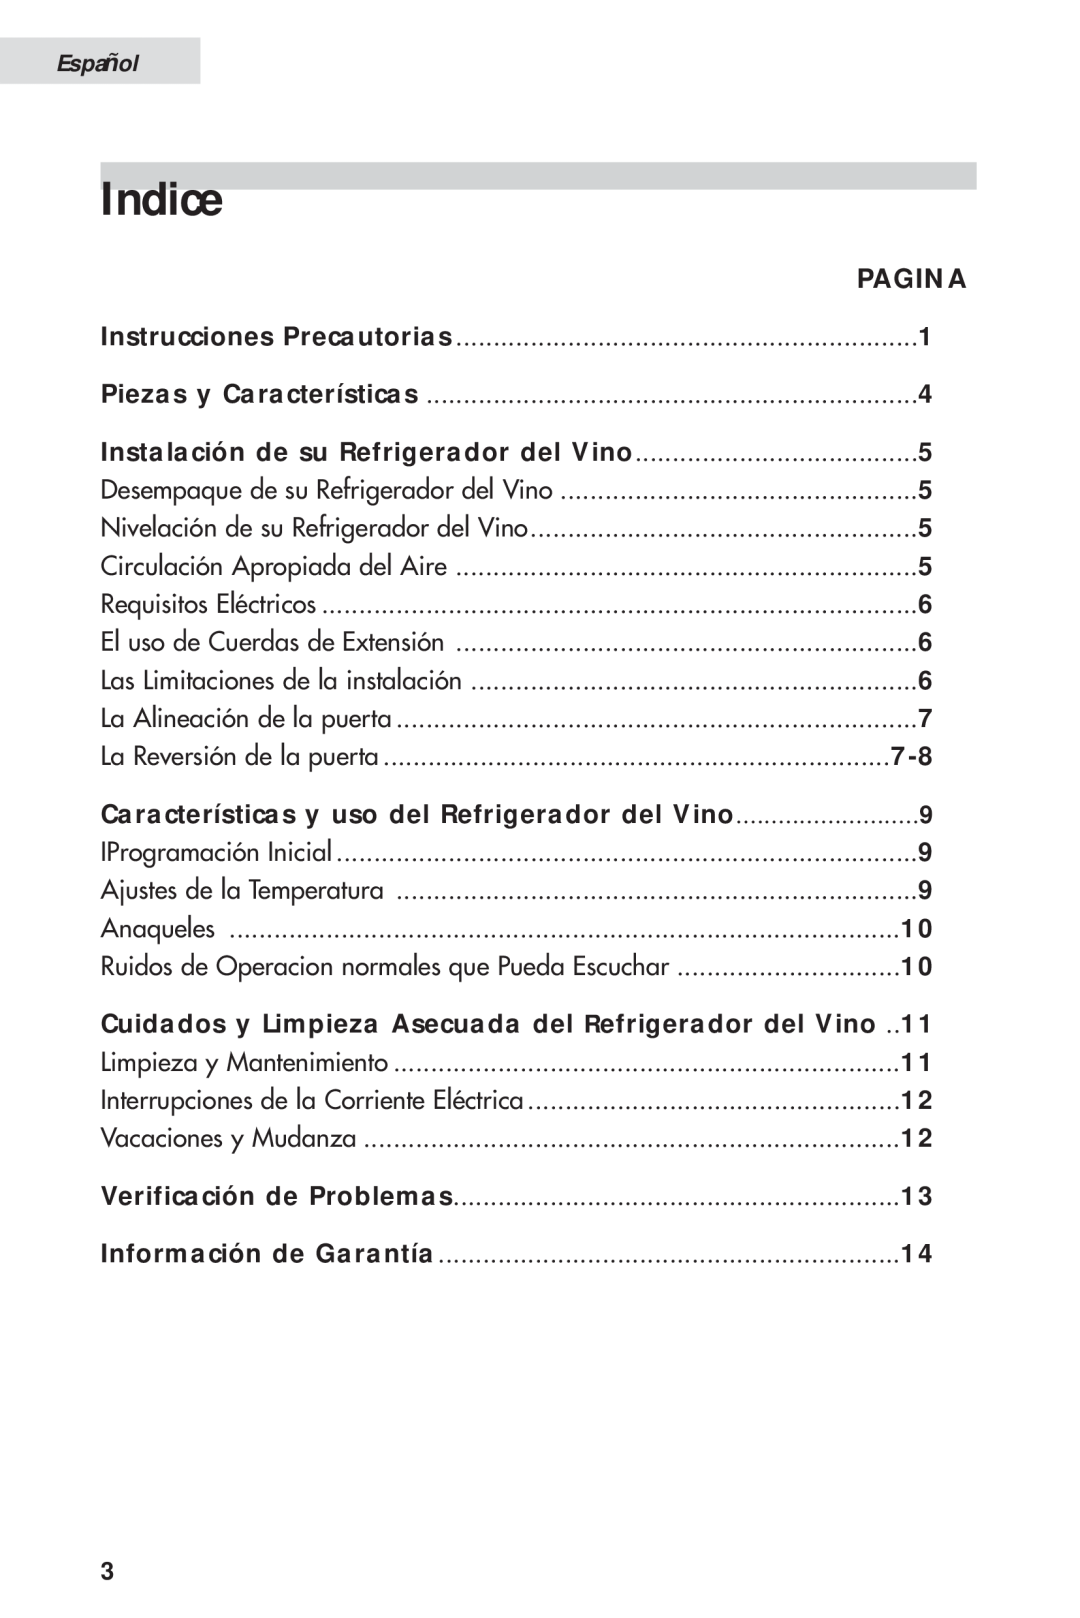 Haier HVH014A manual Indice, Pagina, Características y uso del Refrigerador del Vino, Español 